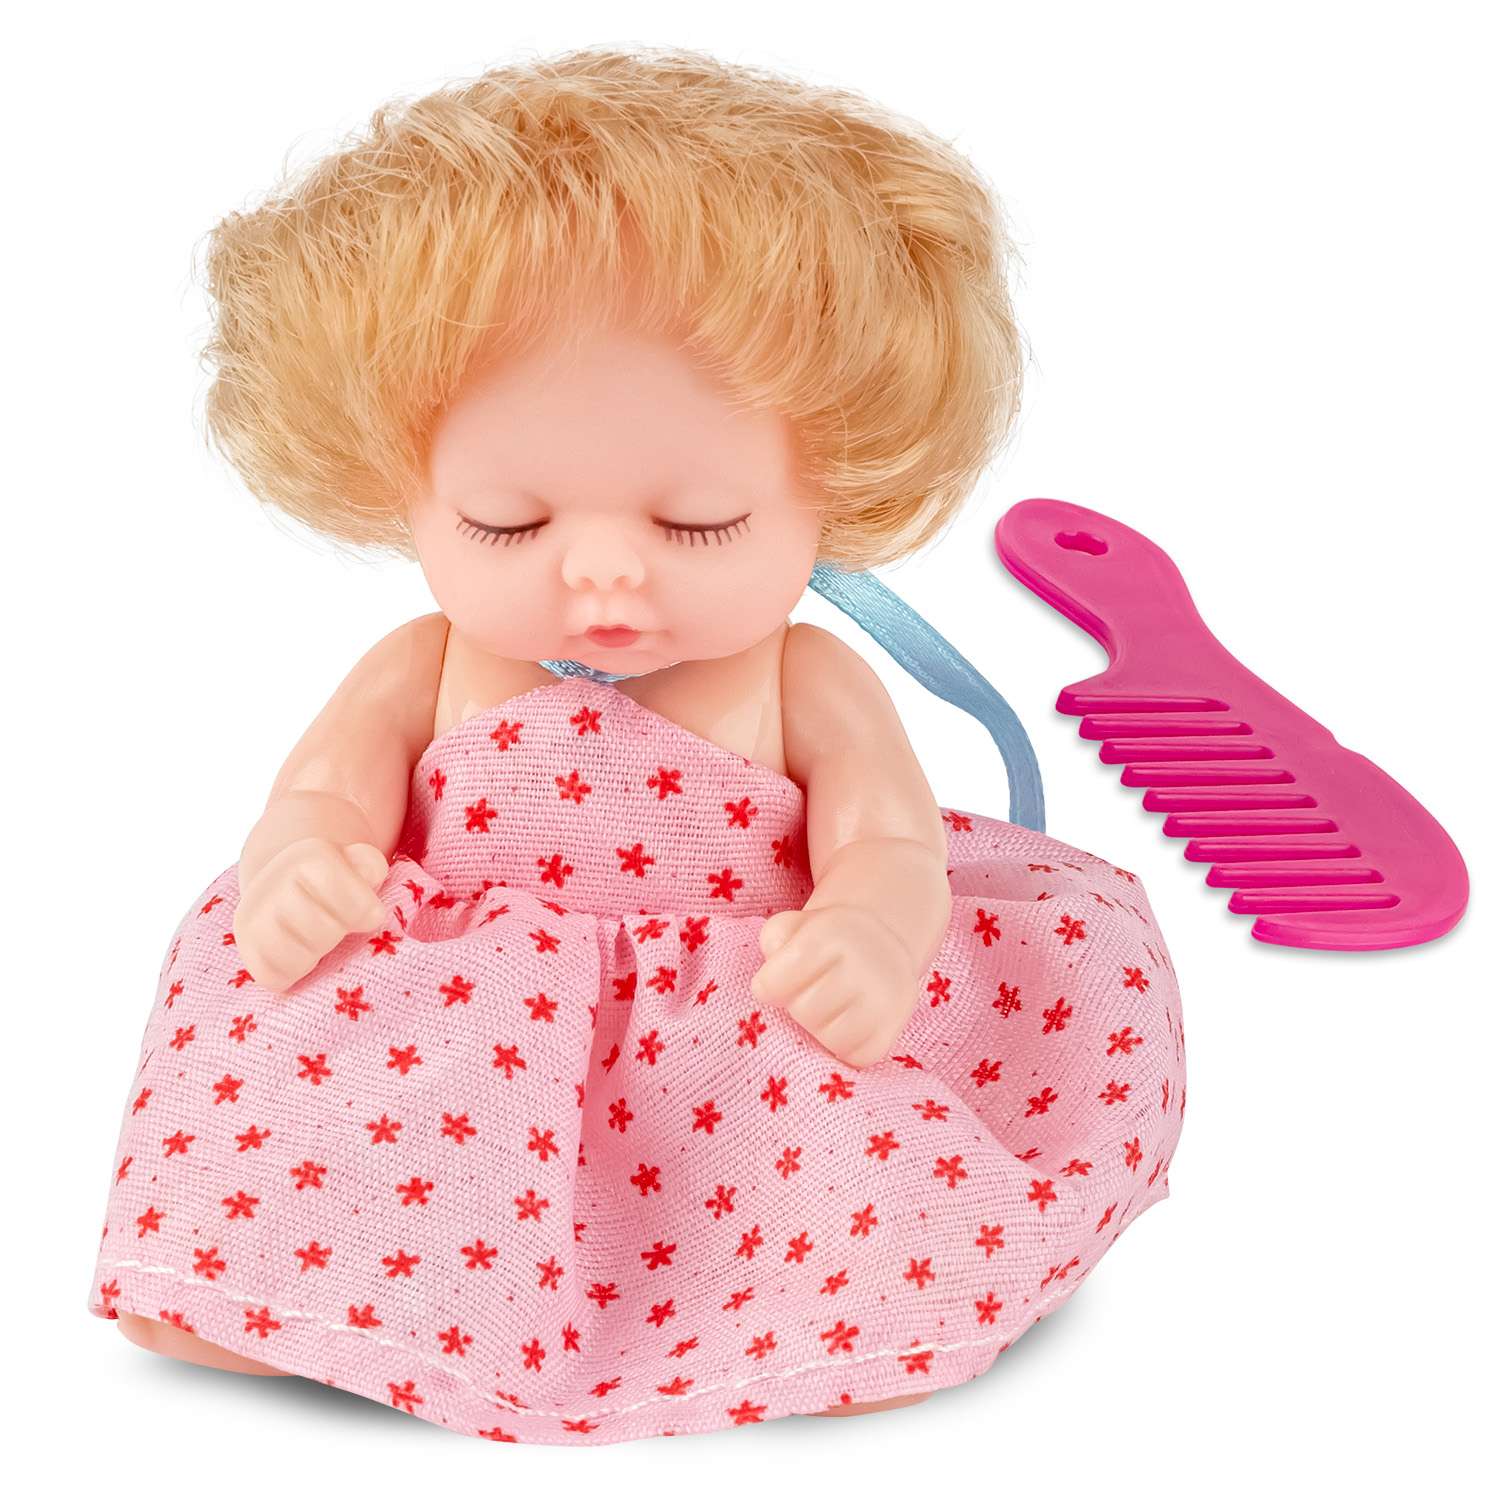 Кукла-младенец DollyToy с расчёской 11.5 см в шаре светло-розовый DOL0804-114//светло-розовый - фото 1